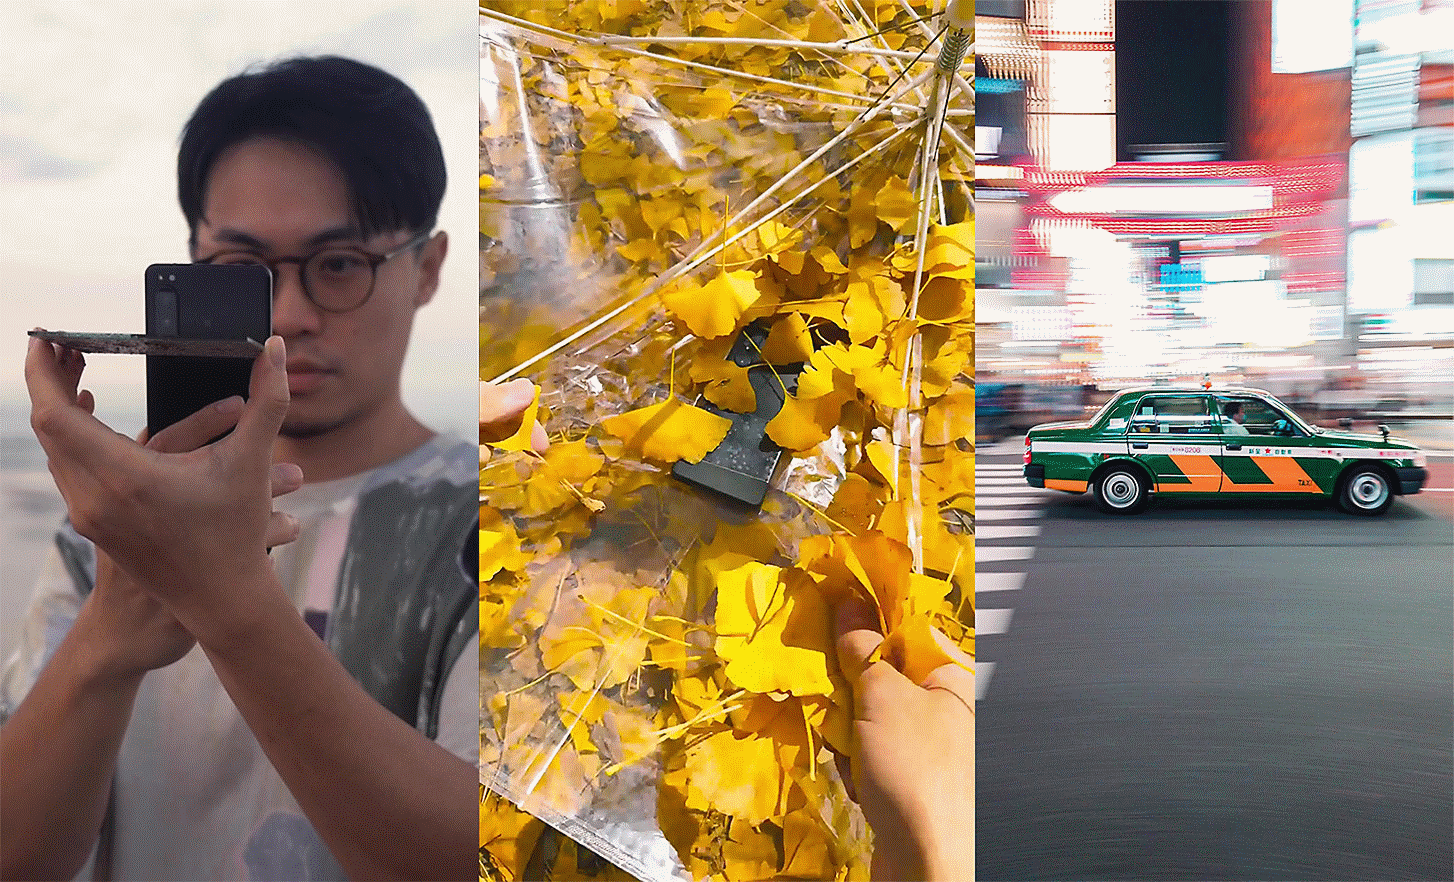 Három portré egymás mellett, a bal oldalin egy személy fotózik, a középsőn levelek között telefon látható, a jobb oldalin pedig autó városi úton